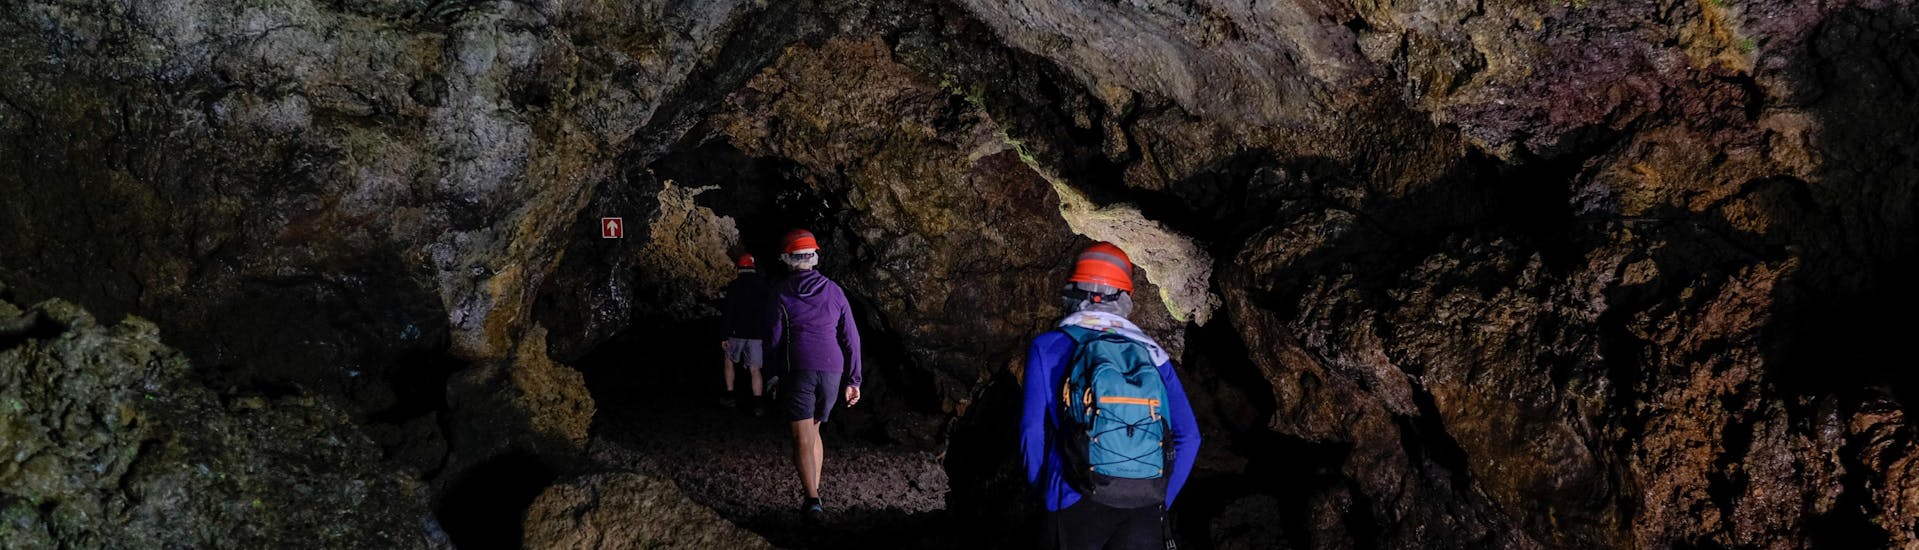 Gruppo di persone che scende sottoterra durante un'attività speleologica.